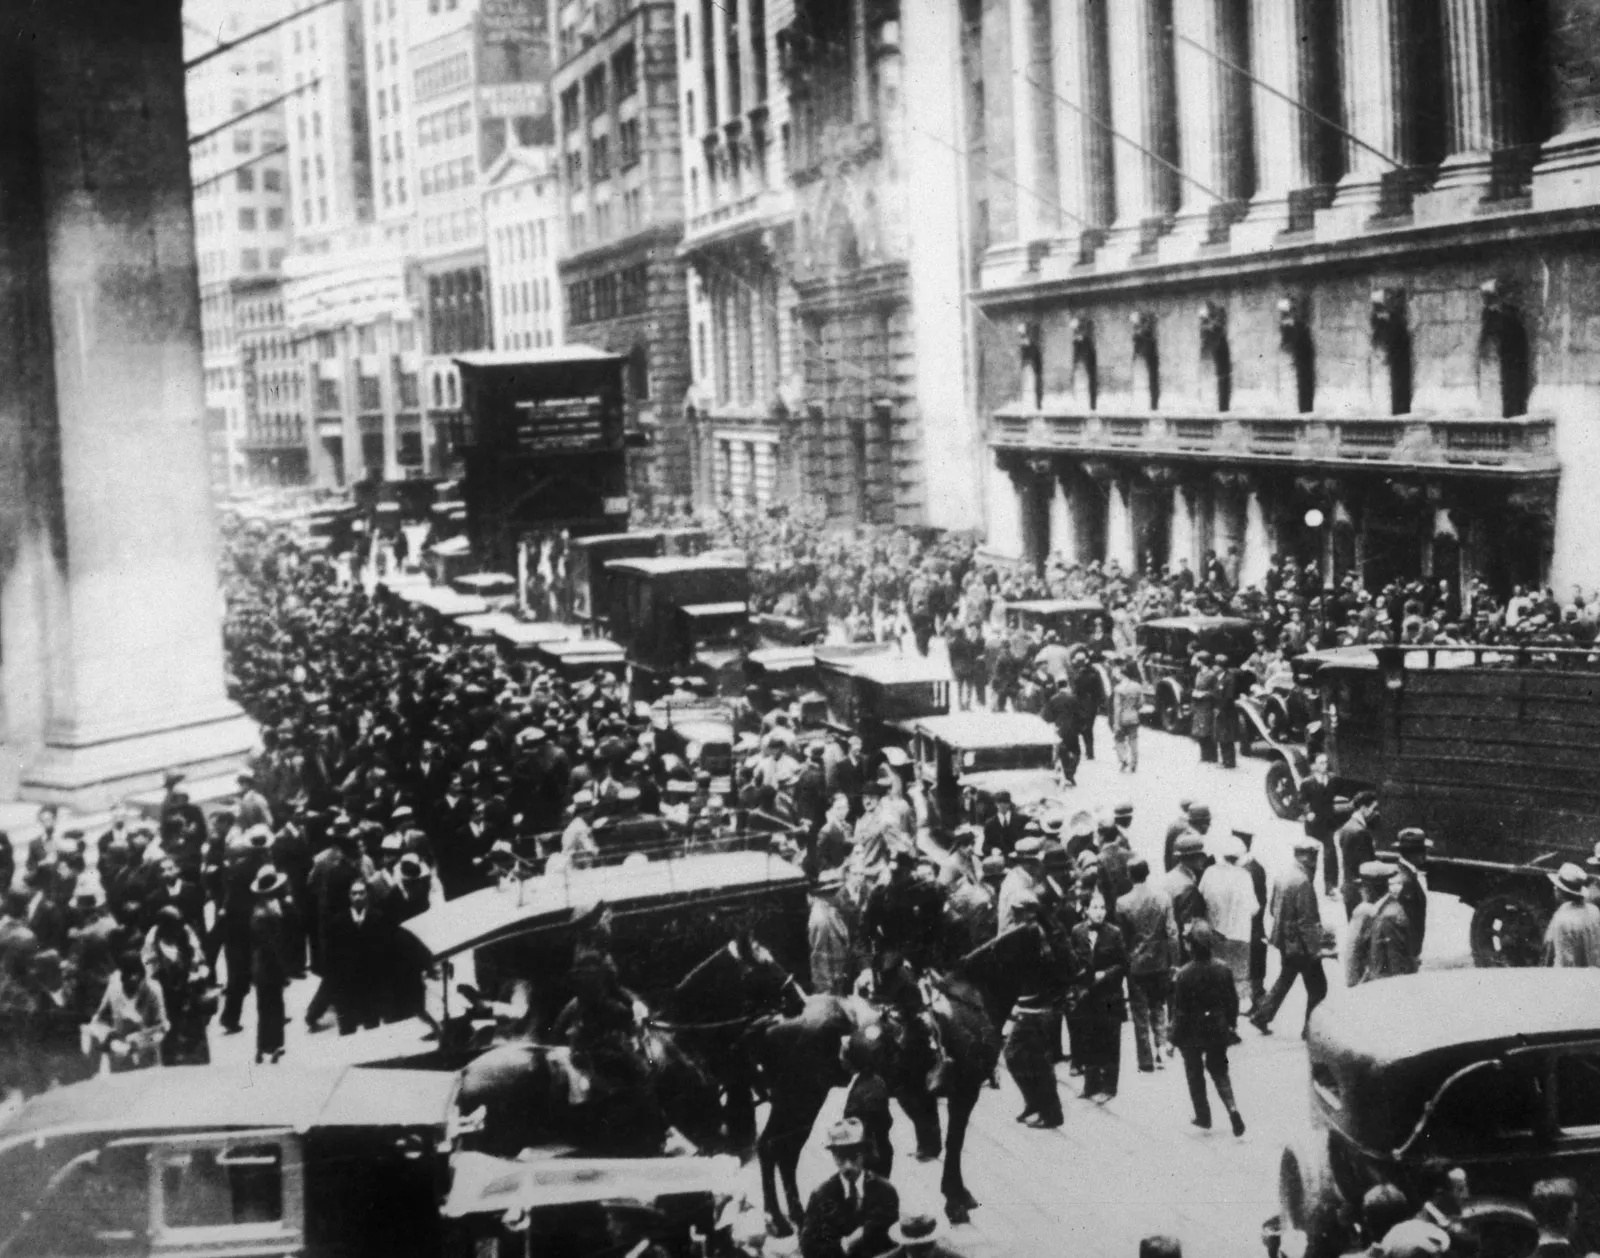 سقوط سهام در سال 1929.webp